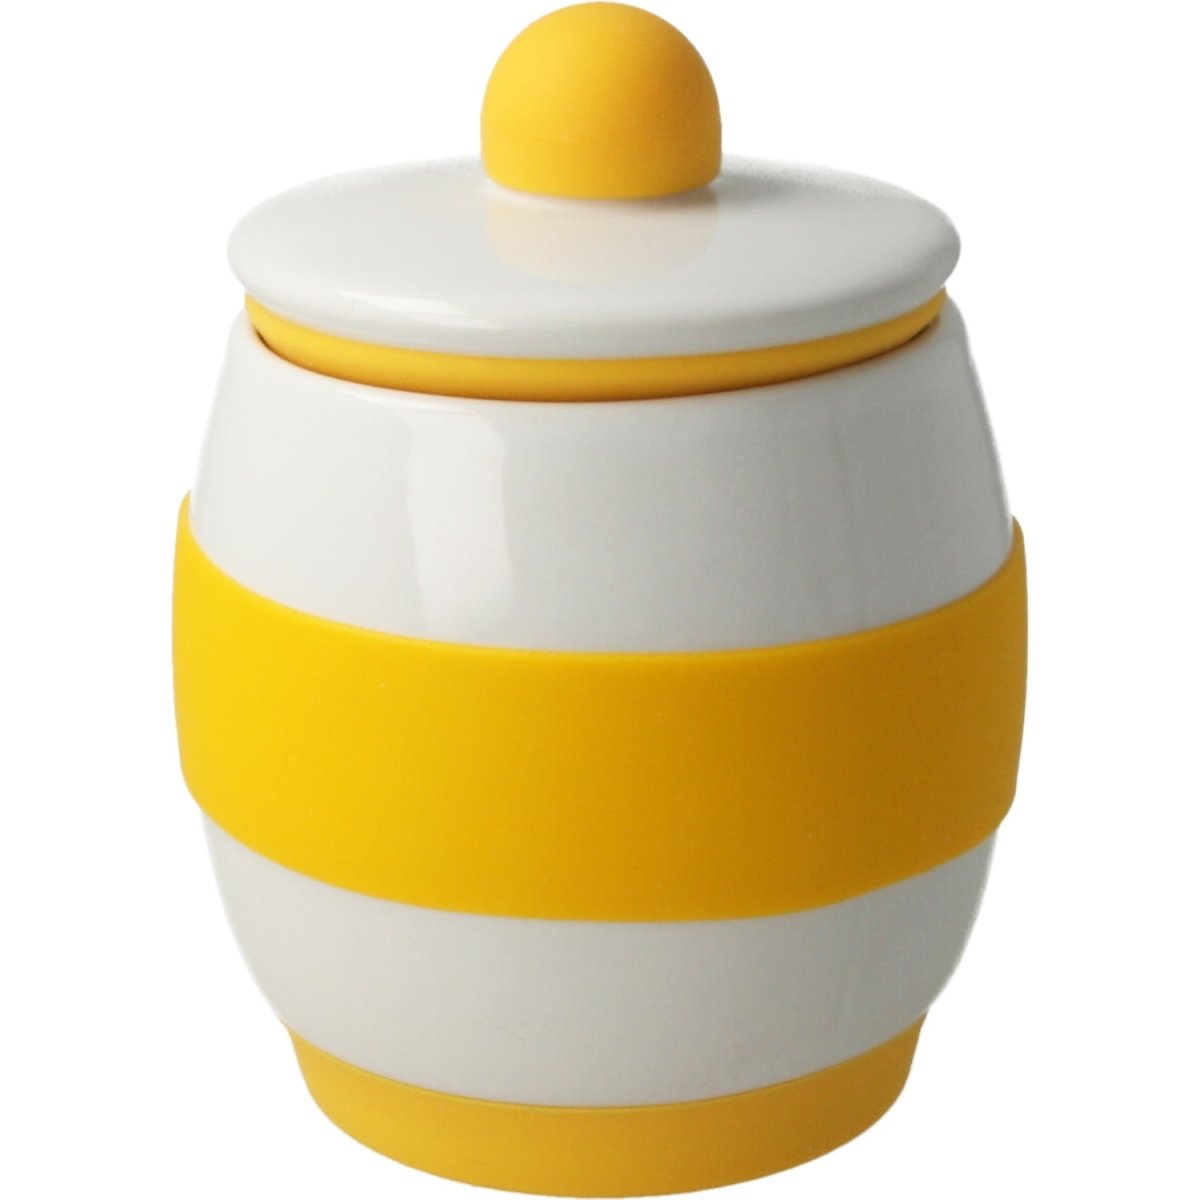 Olivos Mall - *Eggpod Huevera para microondas* - Cocina a la perfección: el  mecanismo de la Eggpod es tan simple porque básicamente utiliza microondas para  hervir agua, que a su vez vaporiza